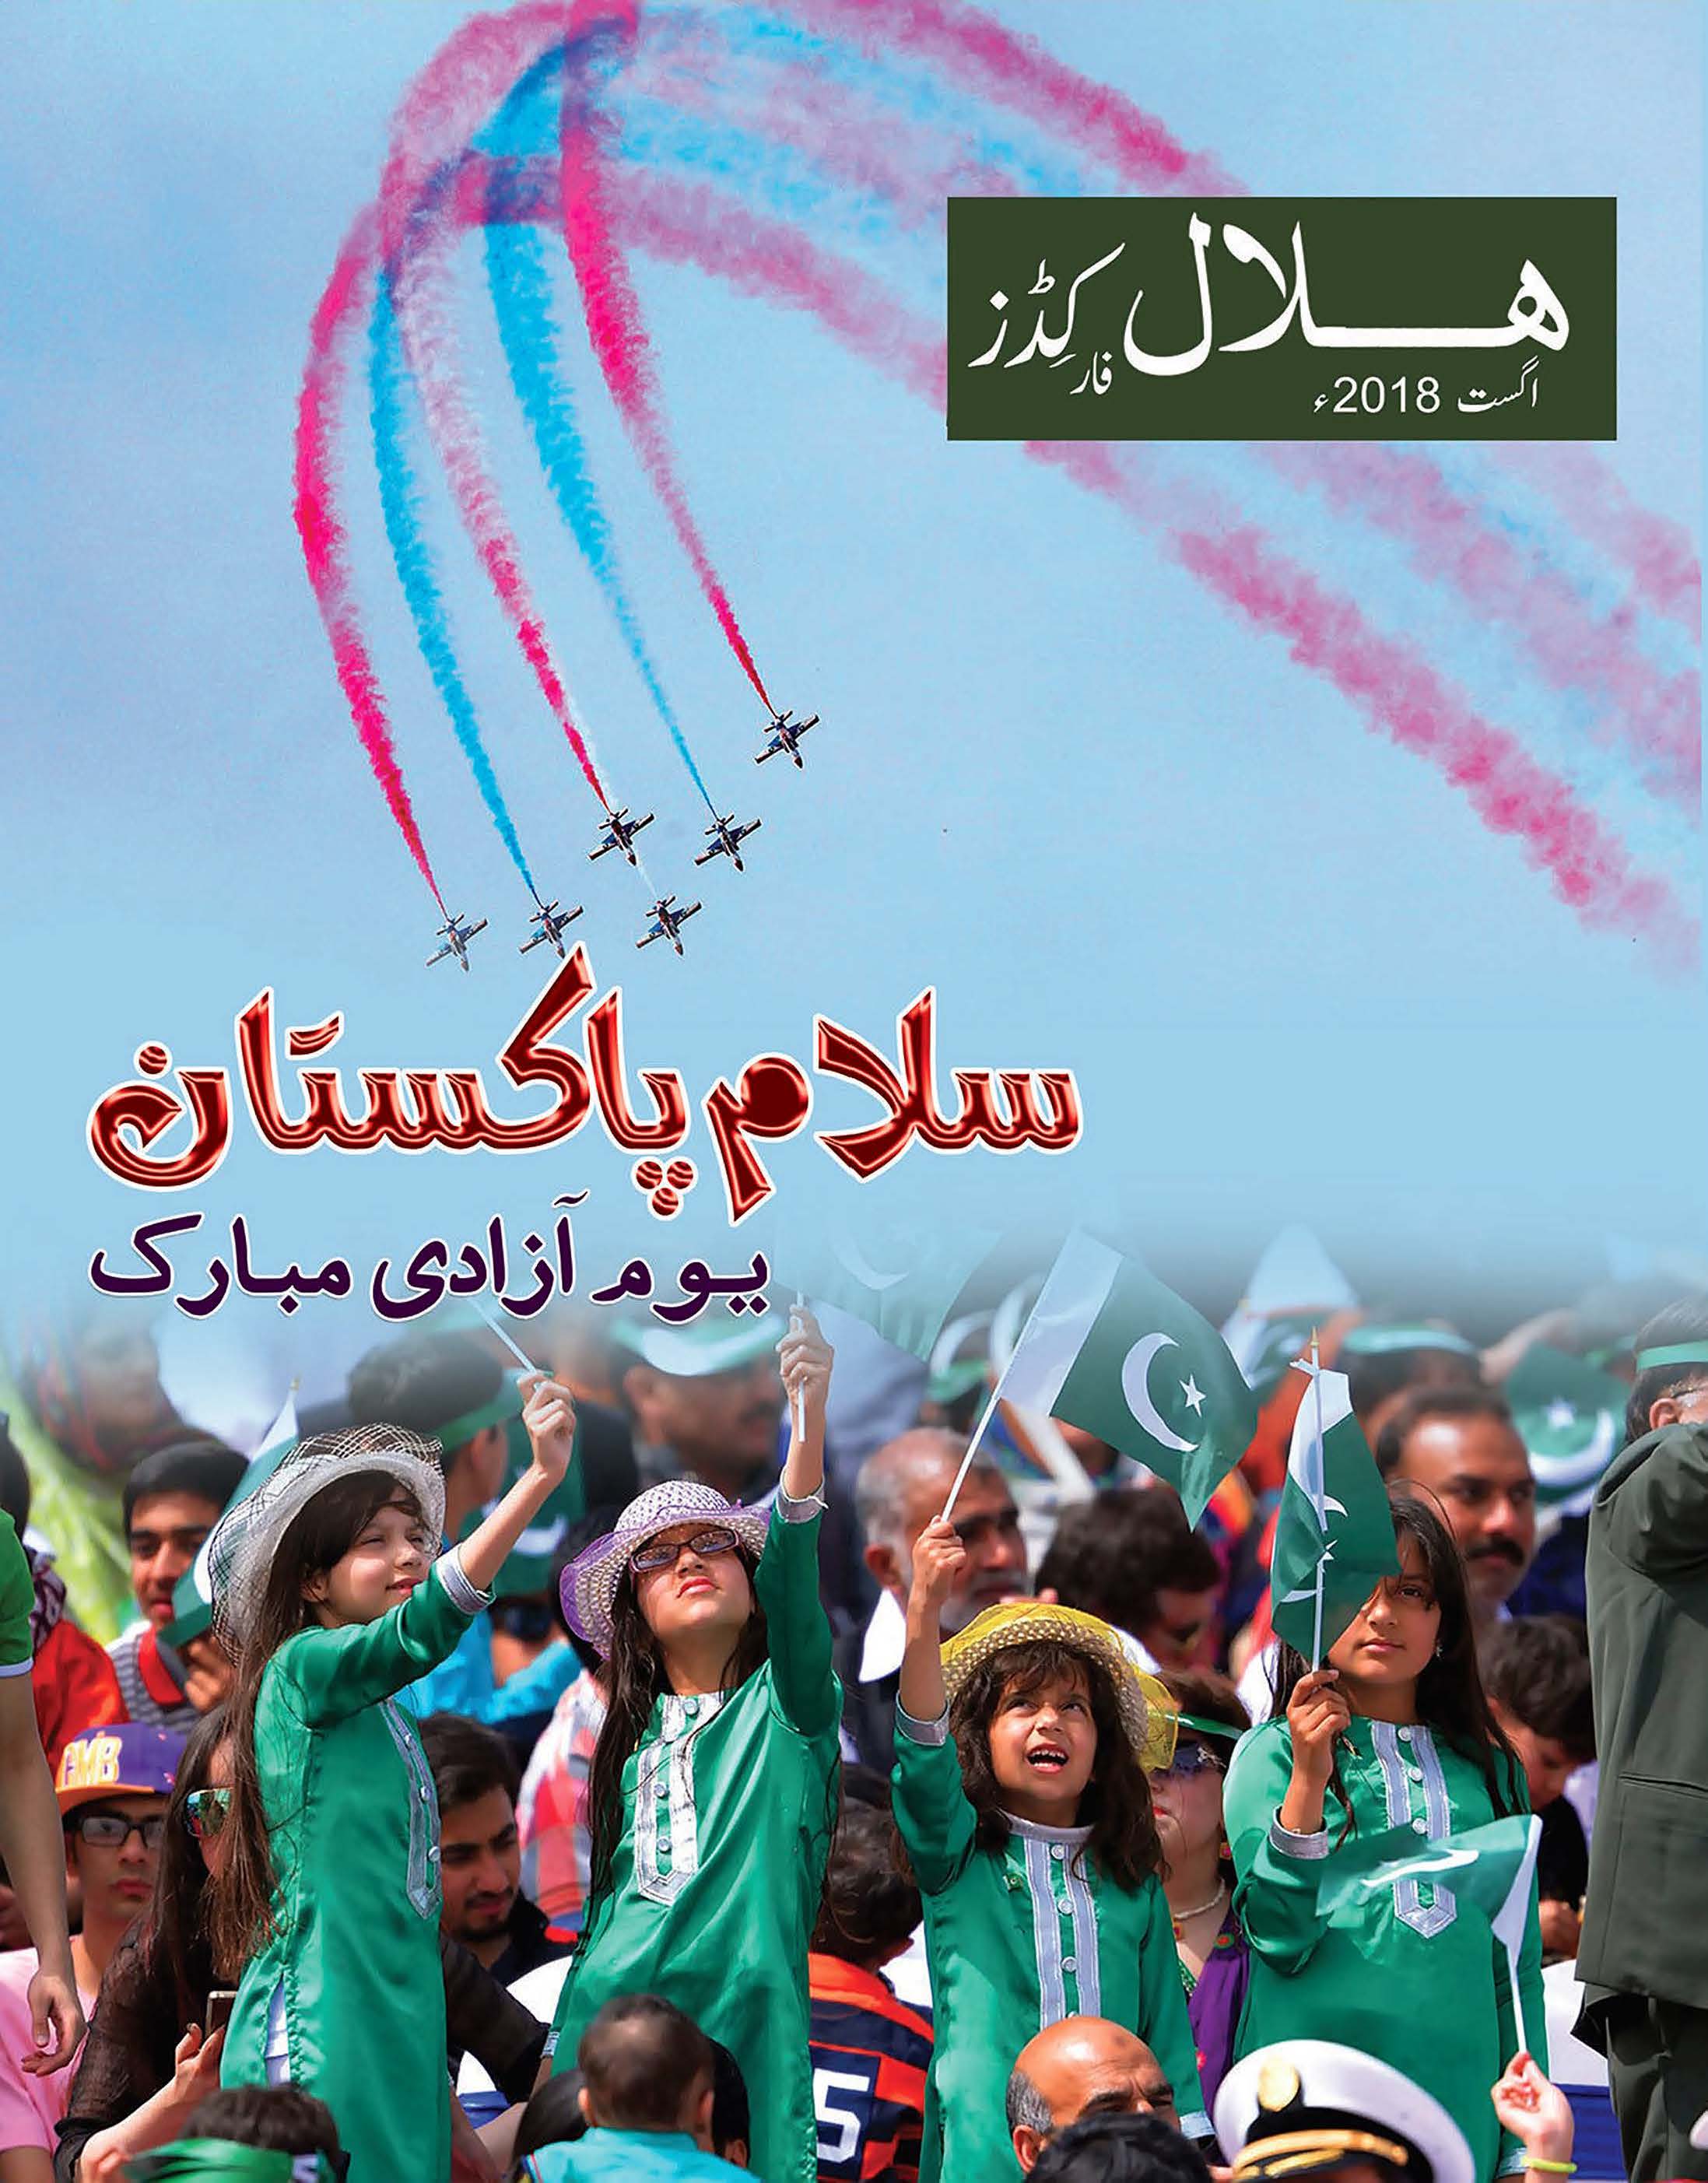 Hilal for Kids Urdu August 2018